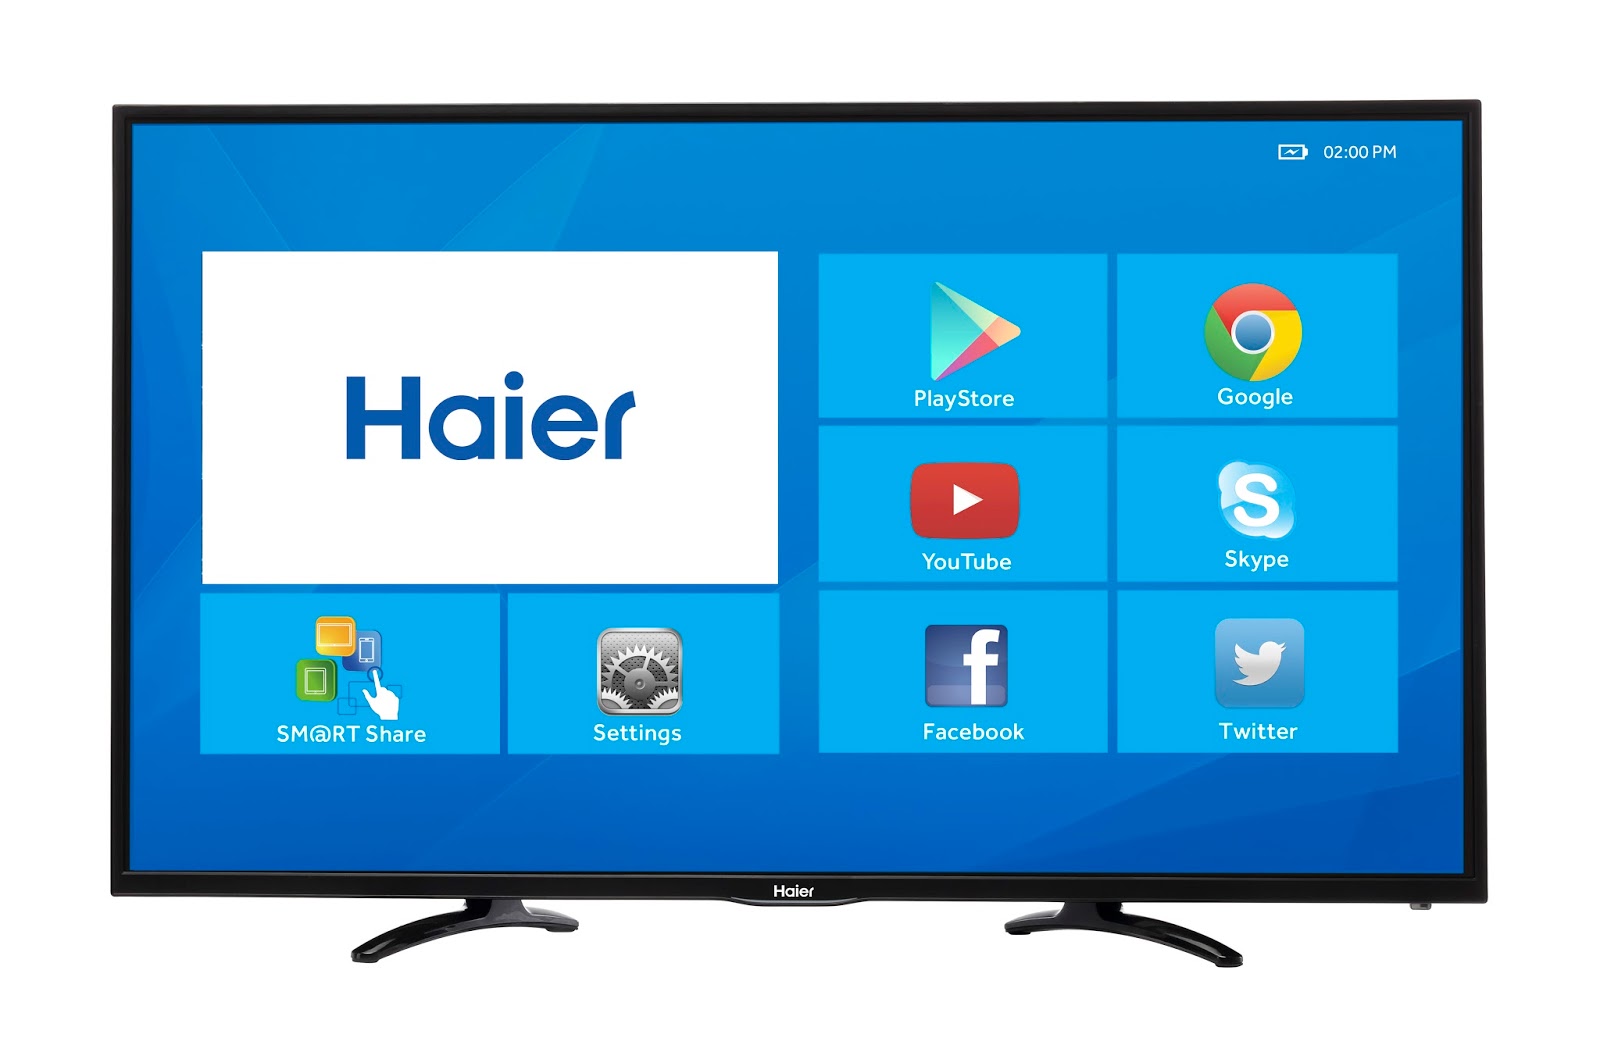 Телевизоры андроид смарт 32. Телевизор Haier андроид ТВ. Телевизор Haier Smart TV s1. Haier 32 Smart TV s1. Телевизор Haier 32 Smart TV BX.